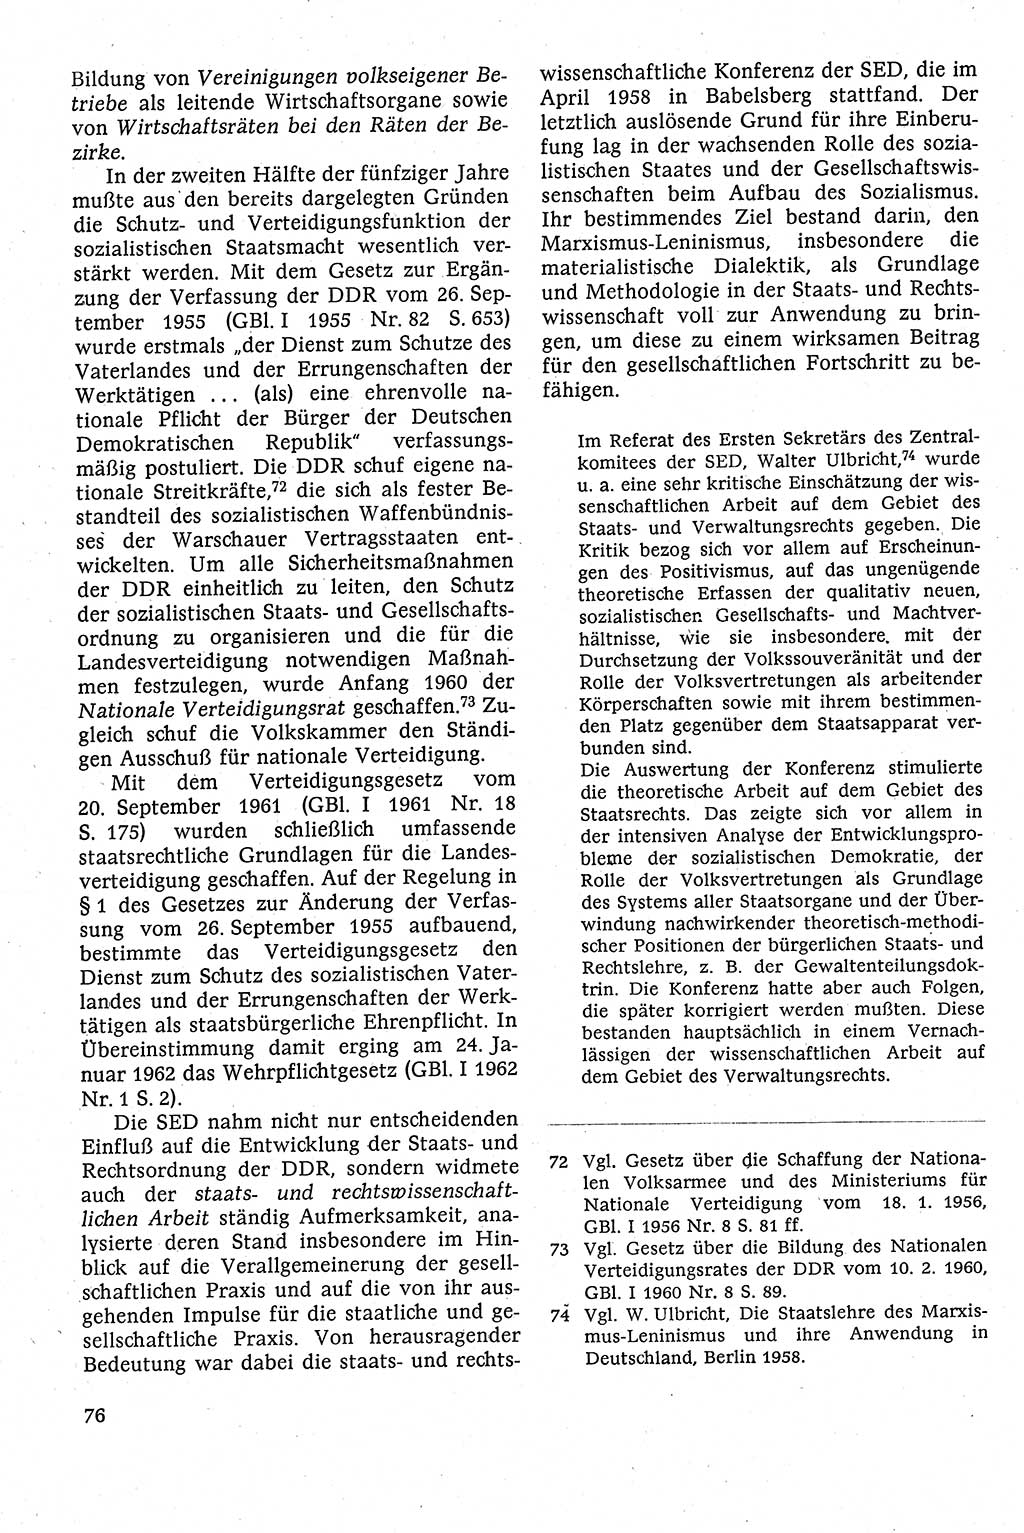 Staatsrecht der DDR [Deutsche Demokratische Republik (DDR)], Lehrbuch 1984, Seite 76 (St.-R. DDR Lb. 1984, S. 76)